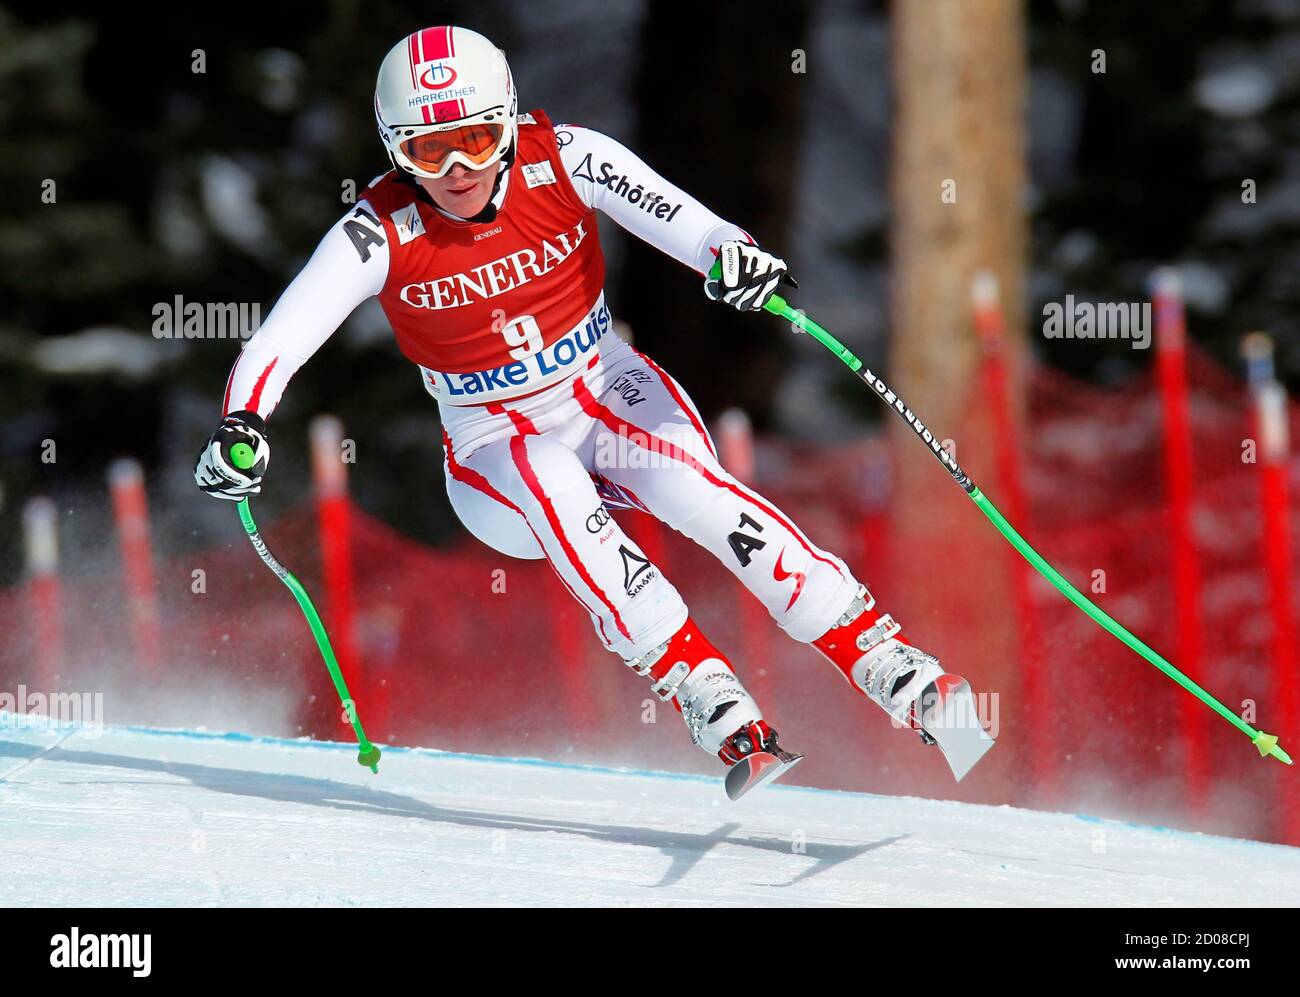 Andrea Fischbacher, d'Autriche, fait un tour lors de la coupe du monde des femmes en ski alpin à Lake Louise, en Alberta, le 2 décembre 2011. REUTERS/Mike Blake (CANADA - Tags: SKI DE SPORT) Banque D'Images